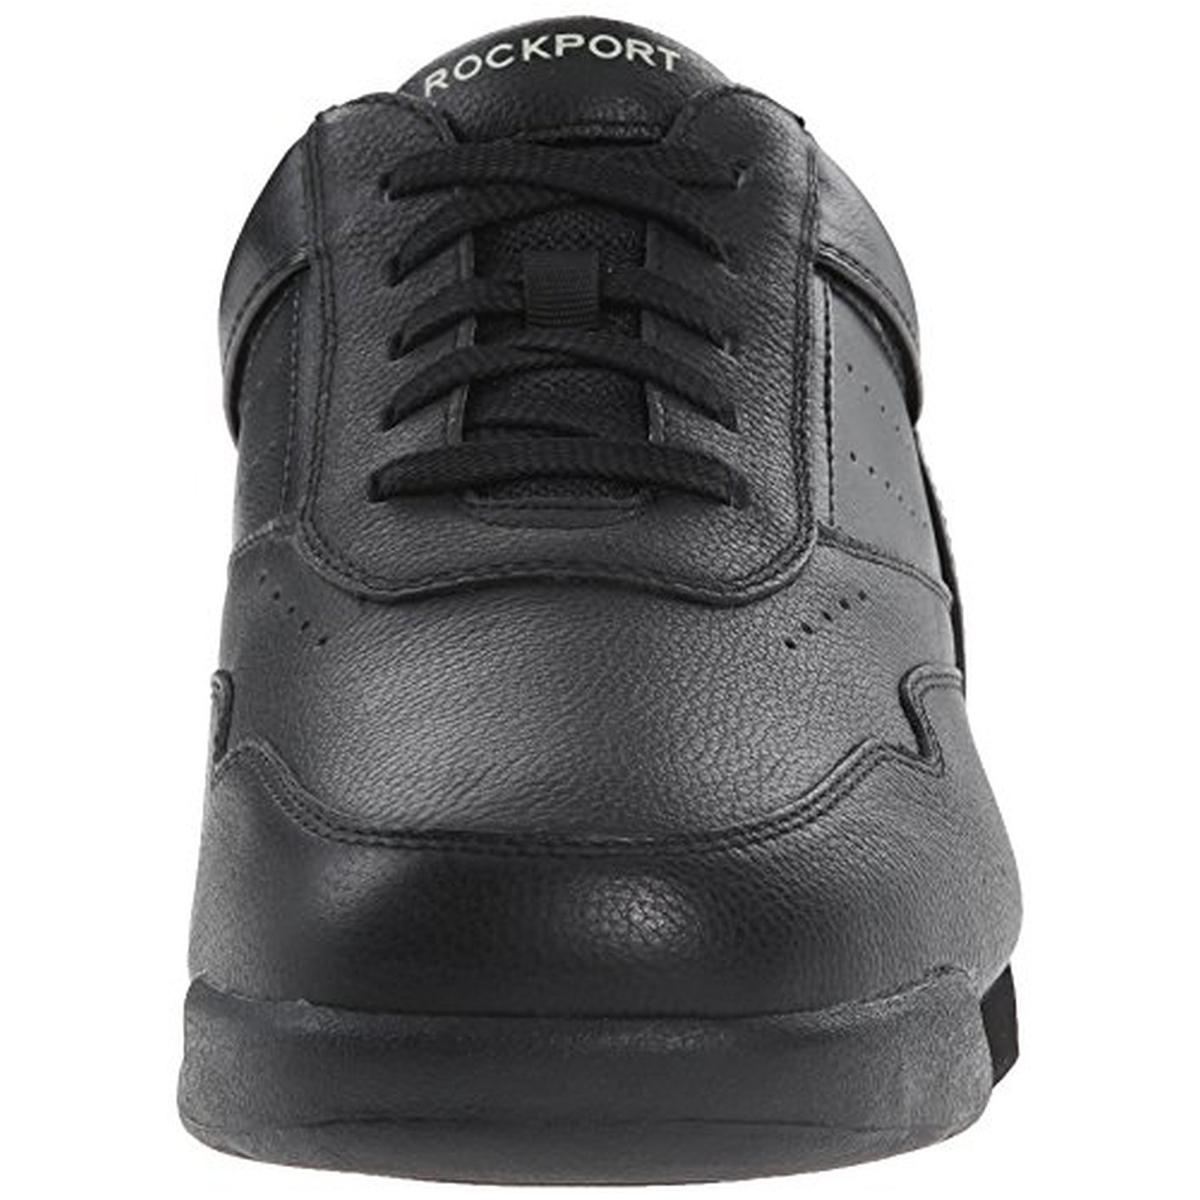 Rockport Mens M7100 ProWalker Black Walking Shoes 13 Narrow (C) BHFO 8692 | eBay